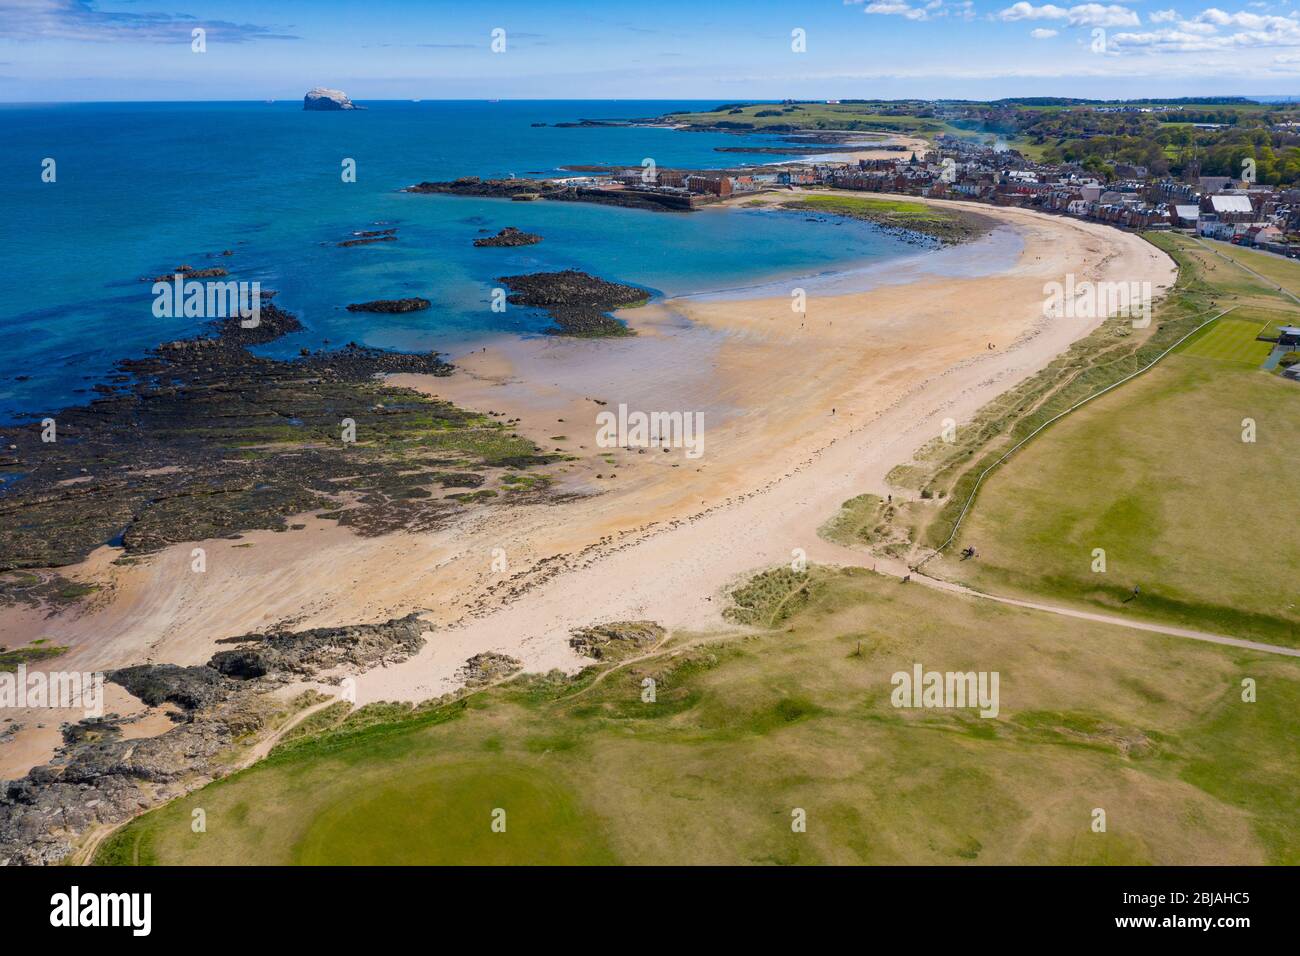 Vue aérienne sur la plage de North Berwick et le club de golf de North Berwick, East Lothian, Écosse, Royaume-Uni Banque D'Images